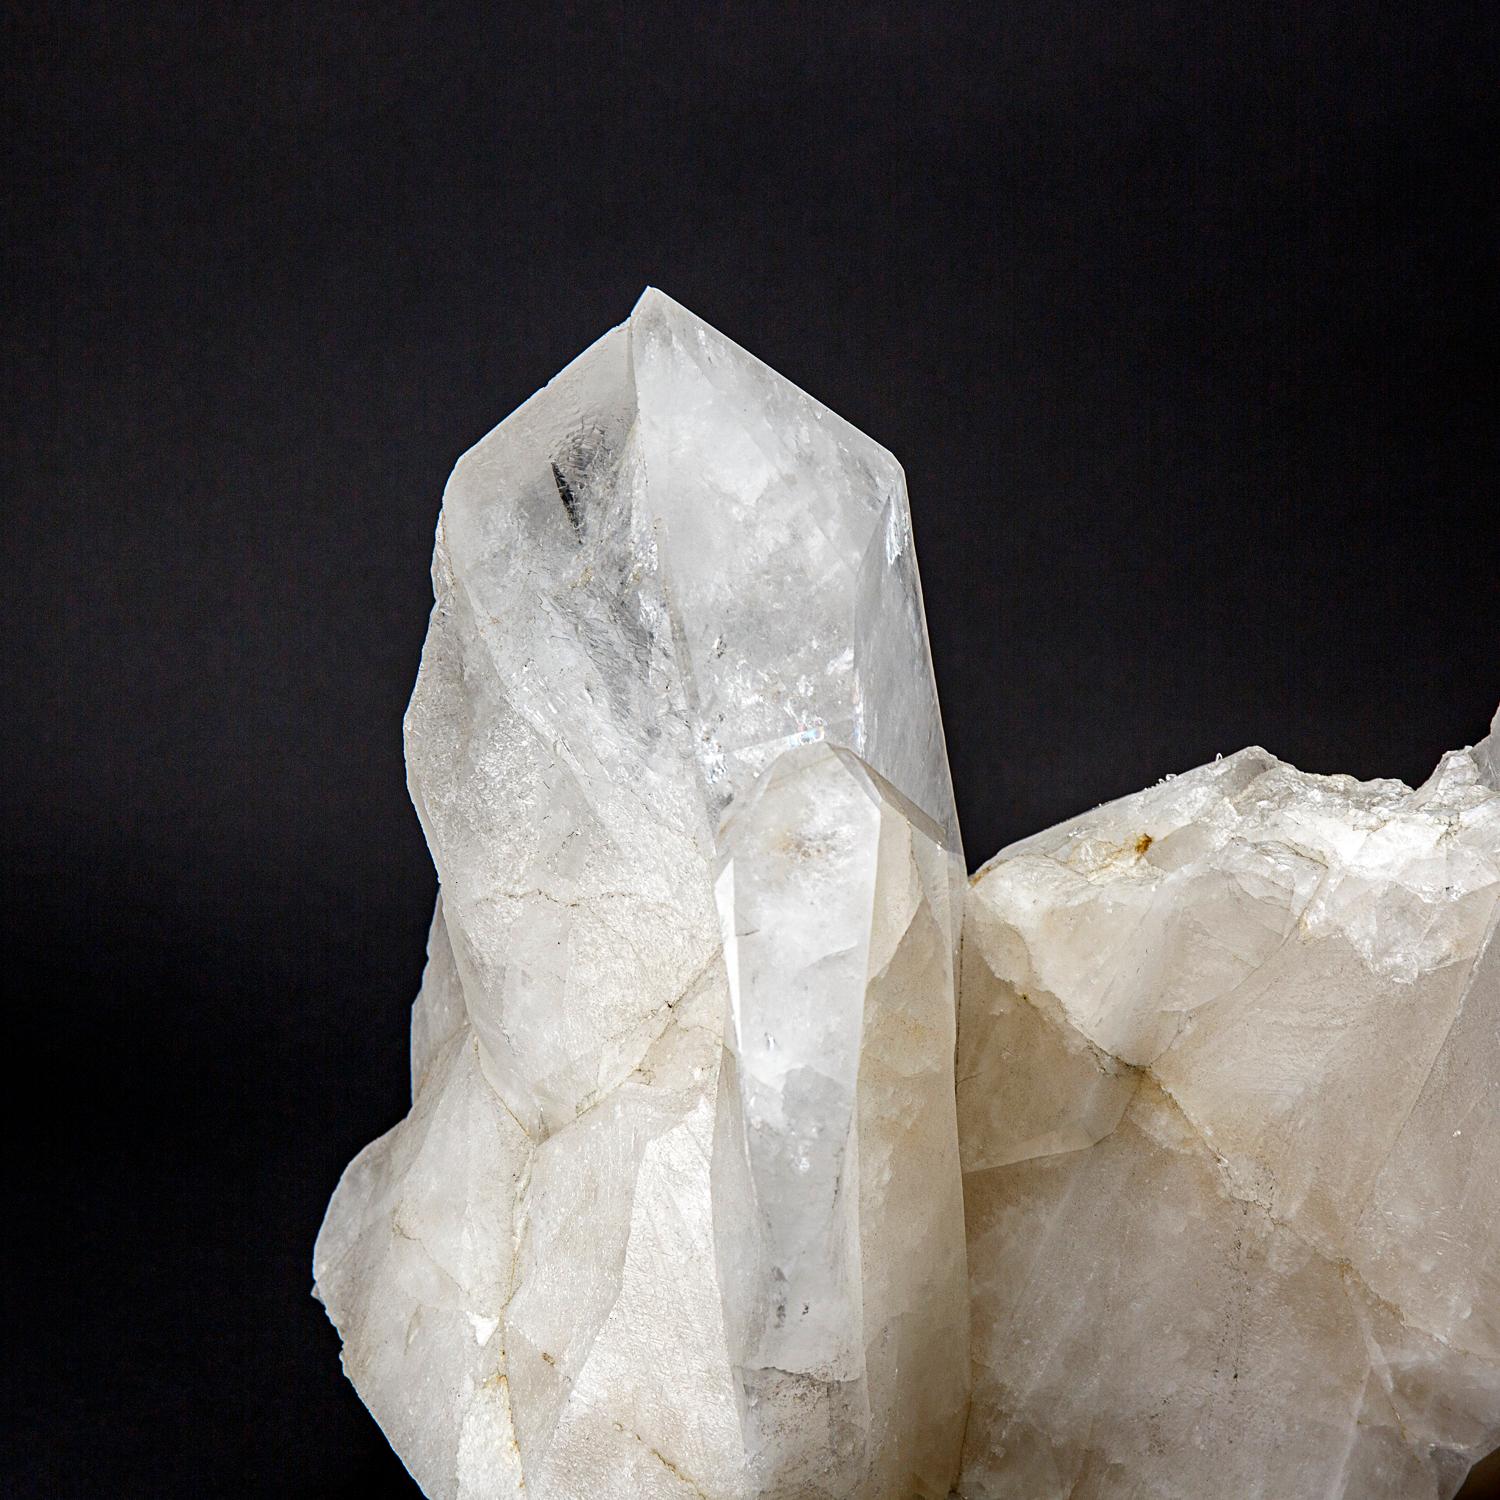 Cette véritable pointe de cristal de quartz clair du Brésil pèse 84 livres et est fabriquée à partir de cristaux de quartz clair de première qualité. Avec une terminaison complète et une surface brillante et réfléchissante, ce cristal constitue un